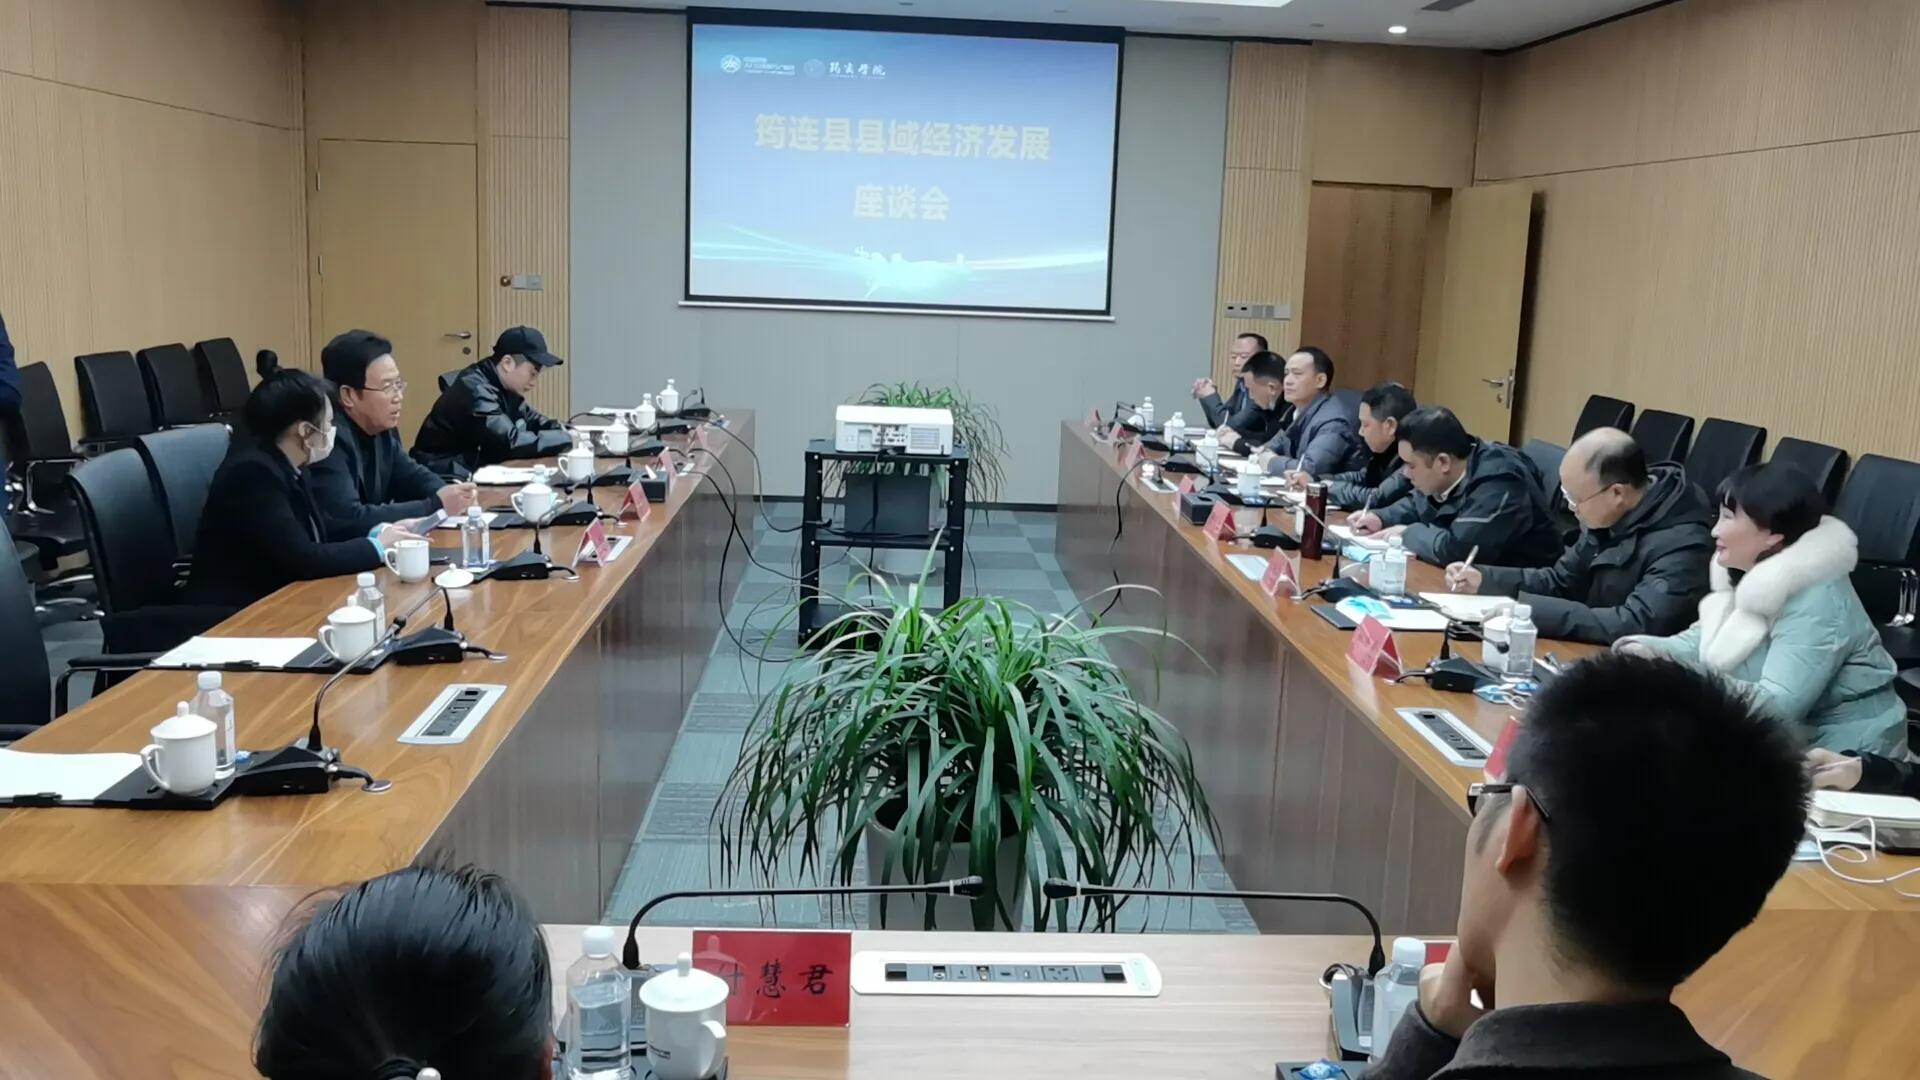 筠连县与“华联农业”达成合作 共同施策助力农业品质提升